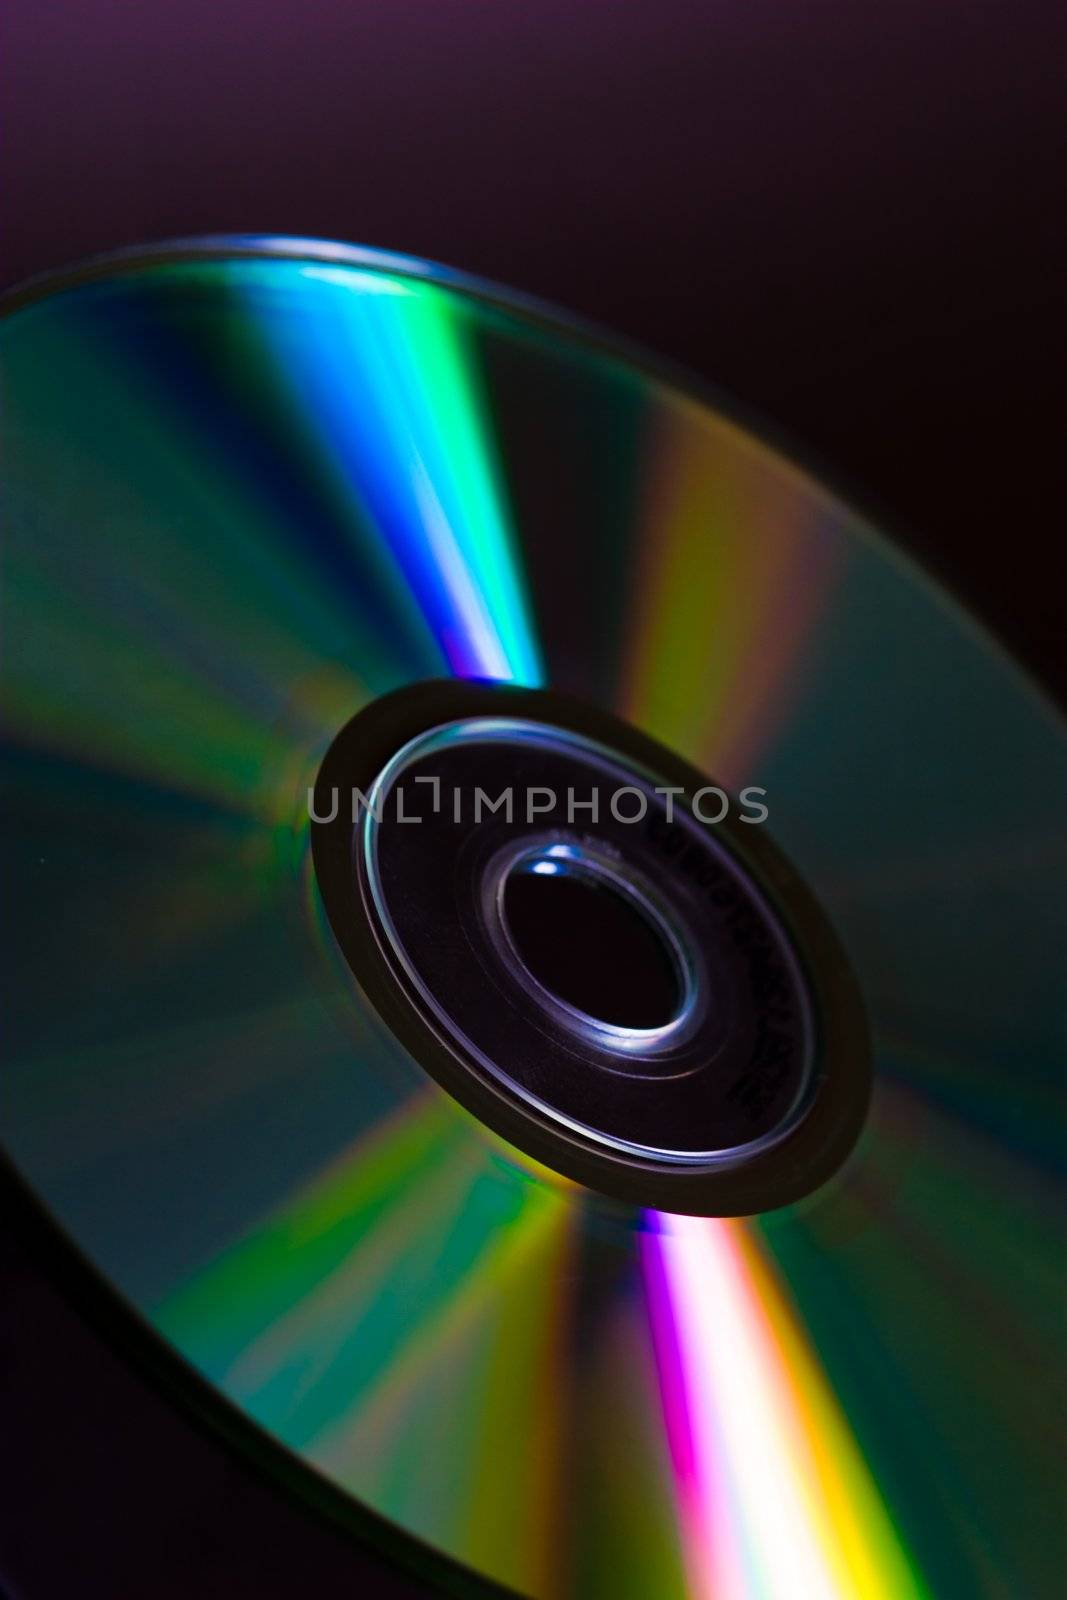 Full light spectrum on a cd quarter